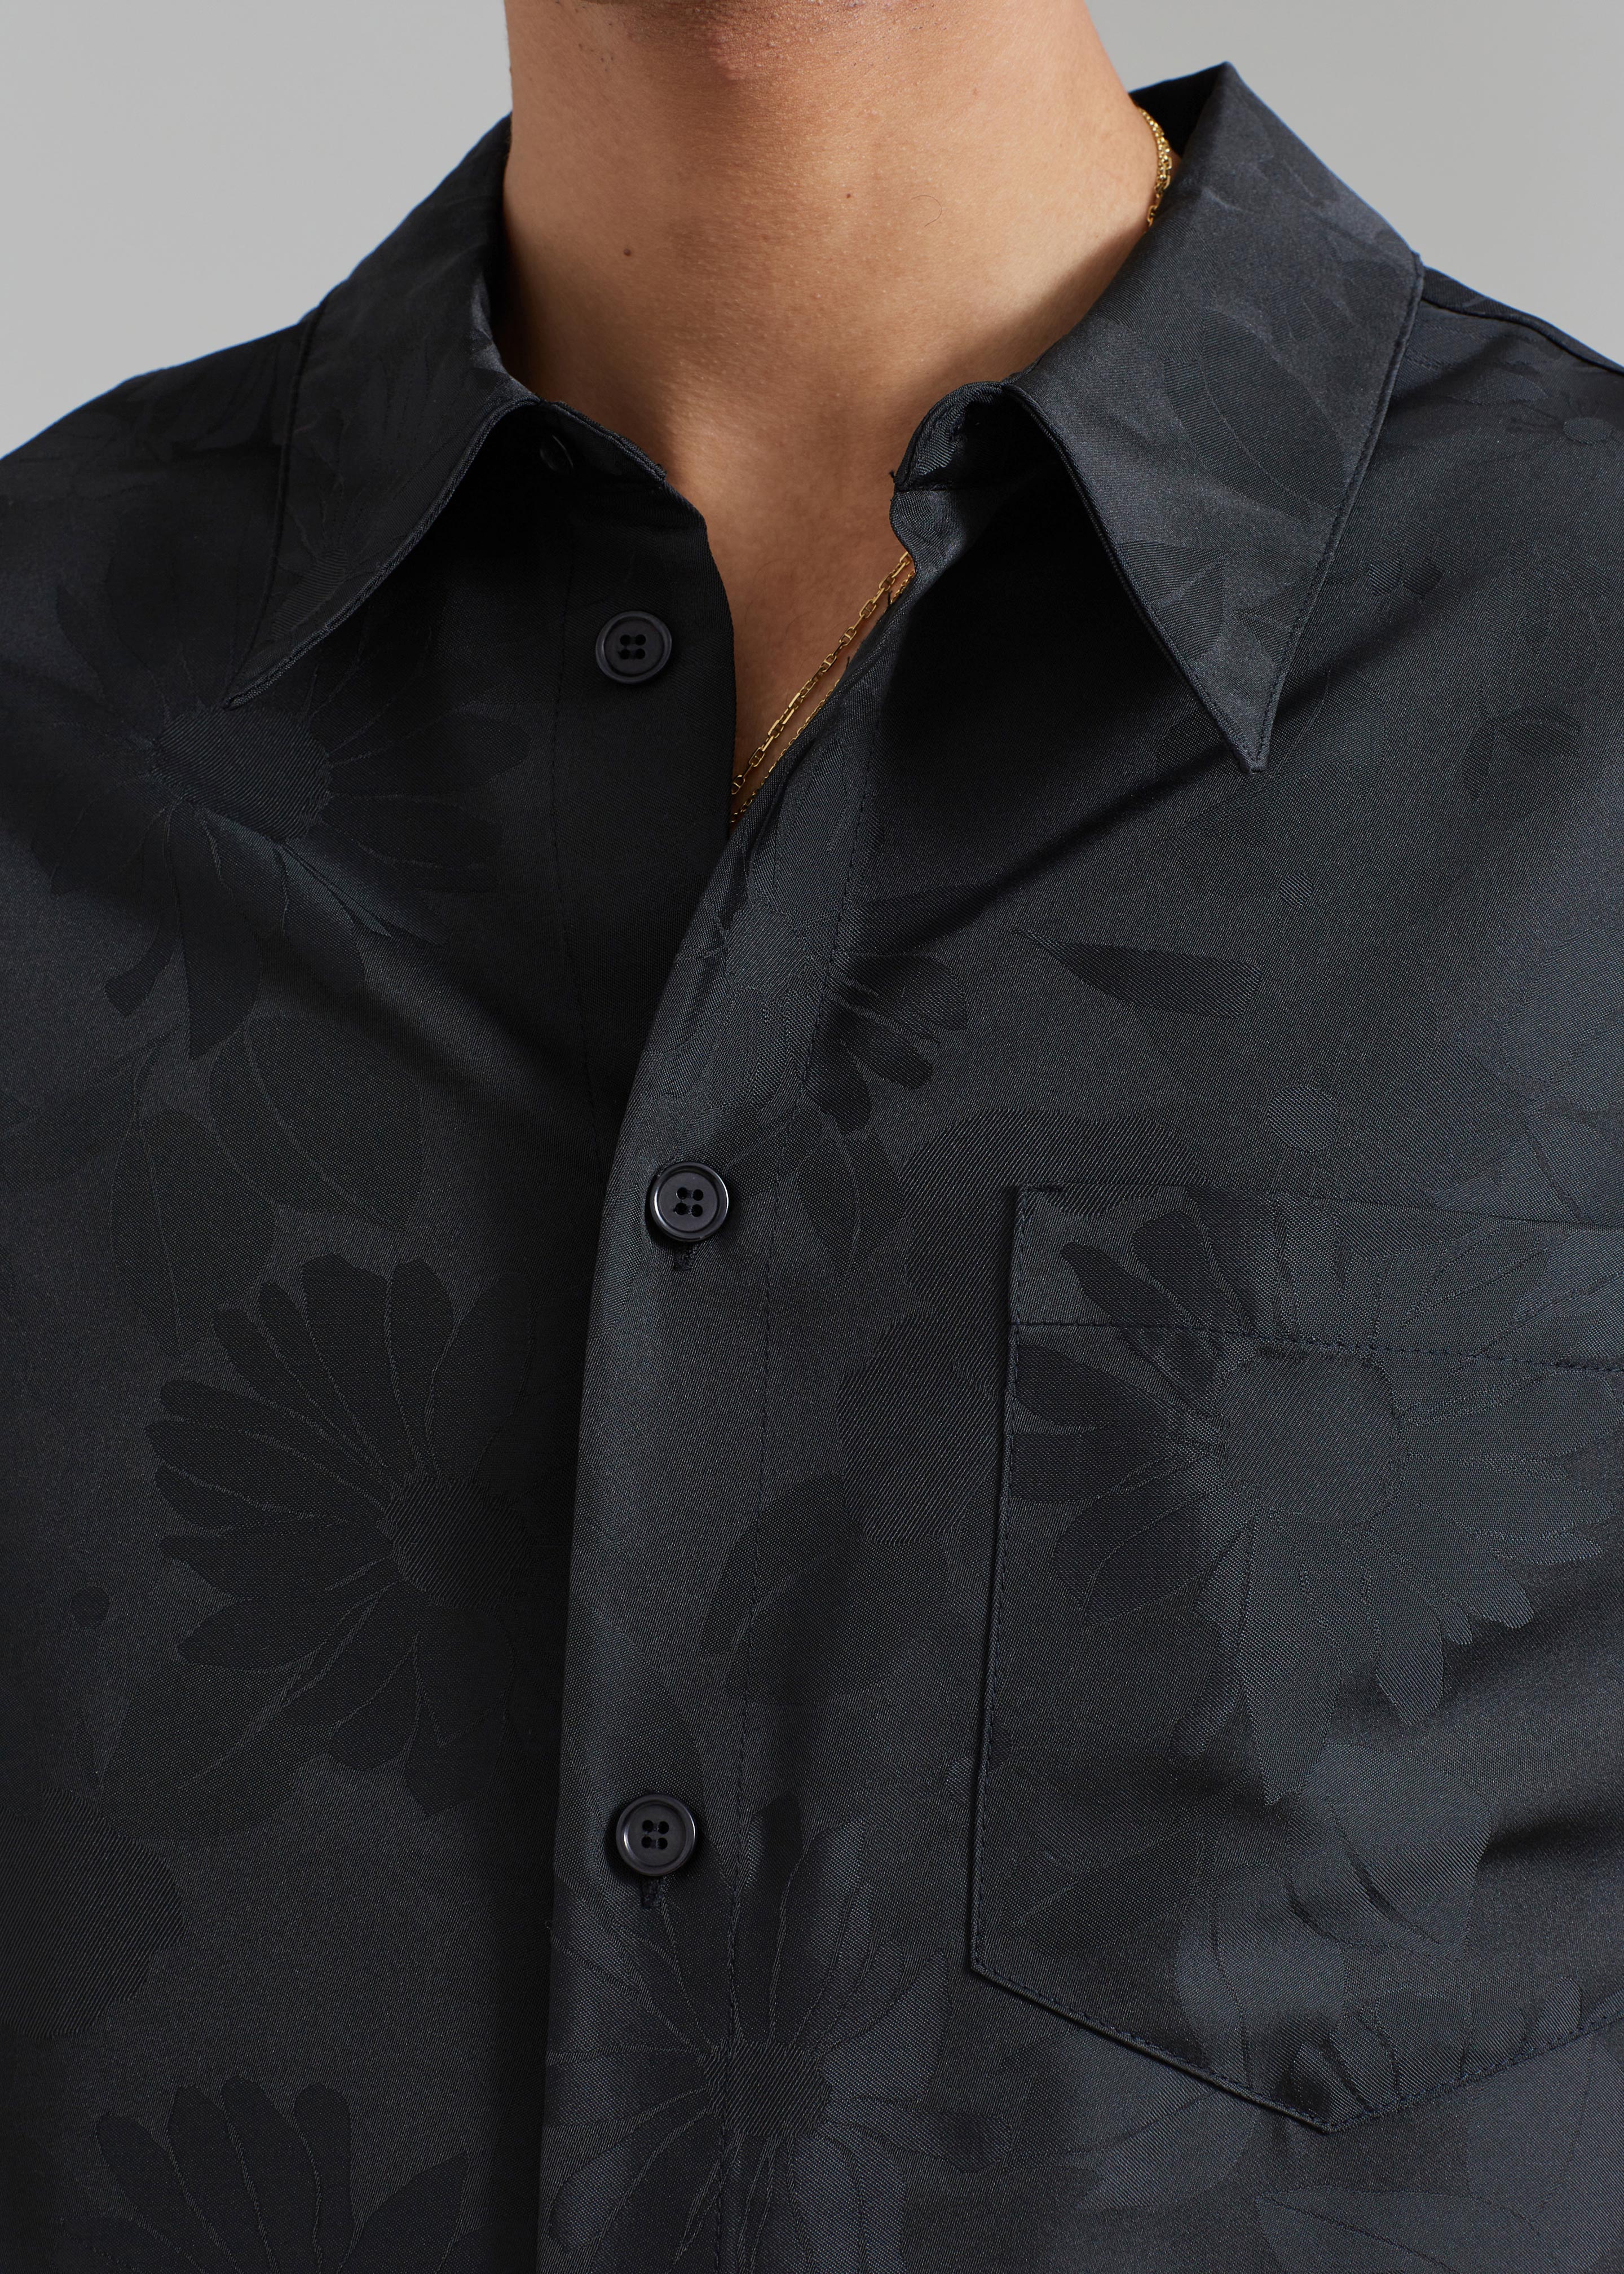 Róhe Floral Jacquard Shirt - Black Jacquard – The Frankie Shop